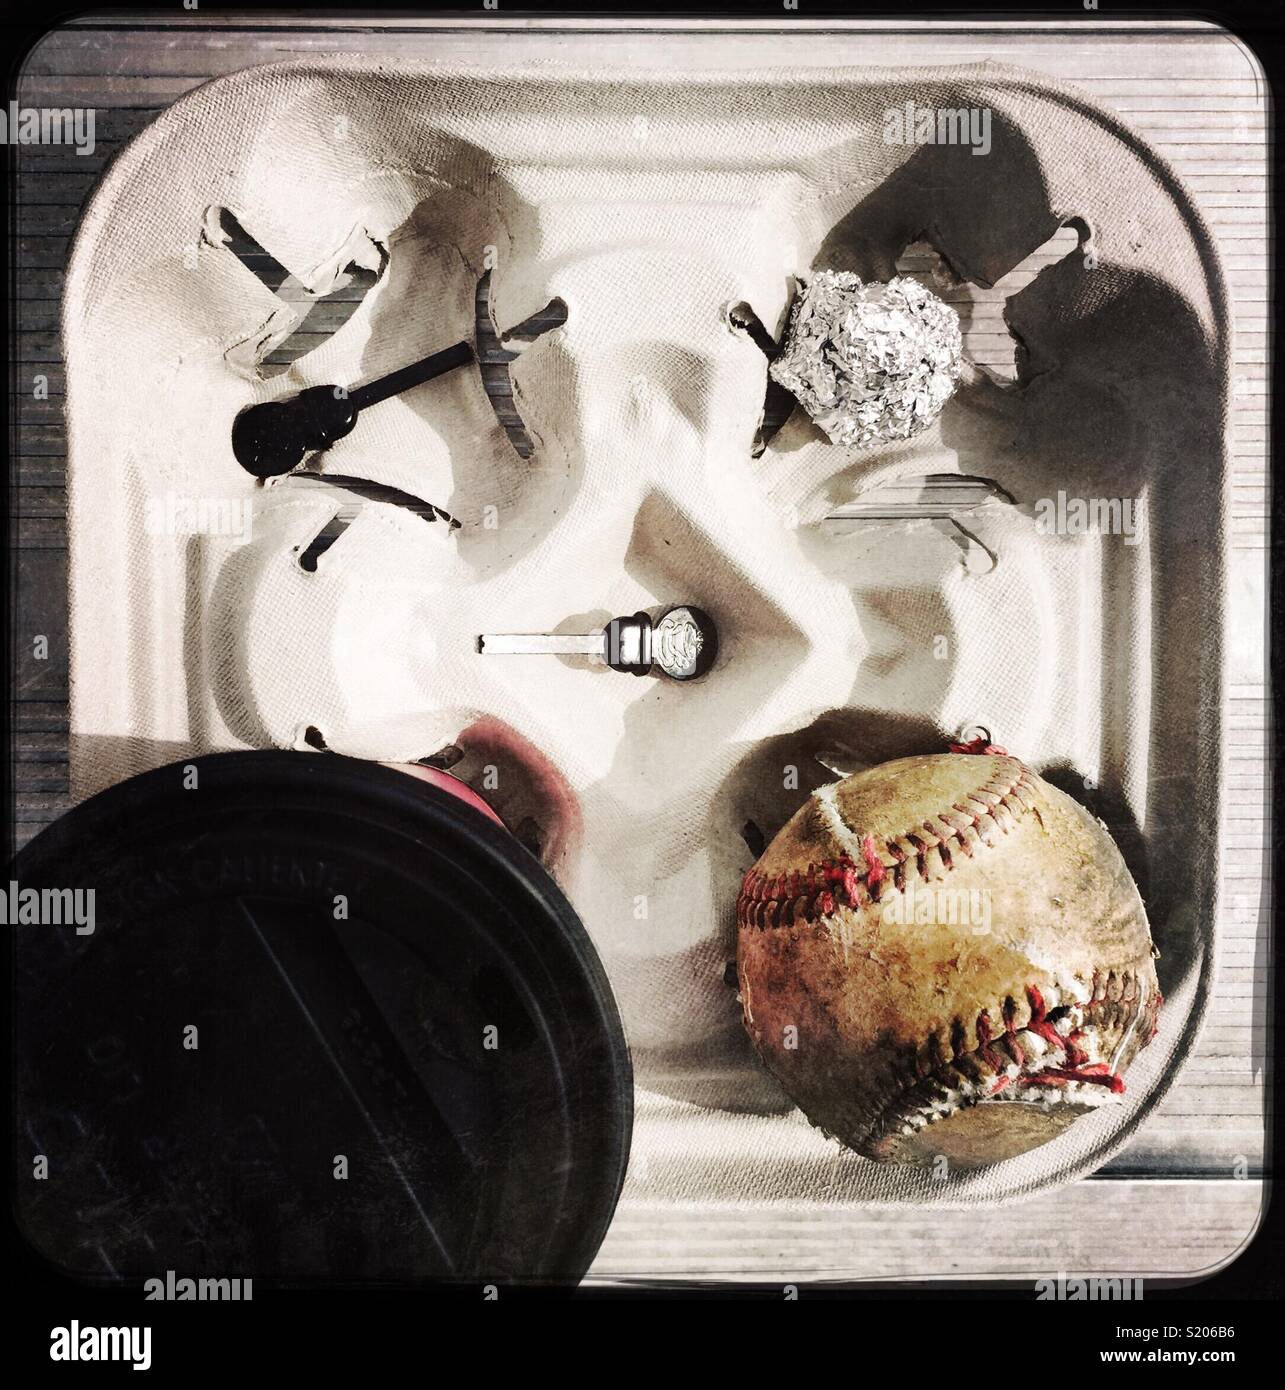 Vassoio per alimenti da un evento sportivo con un marcio baseball Foto Stock